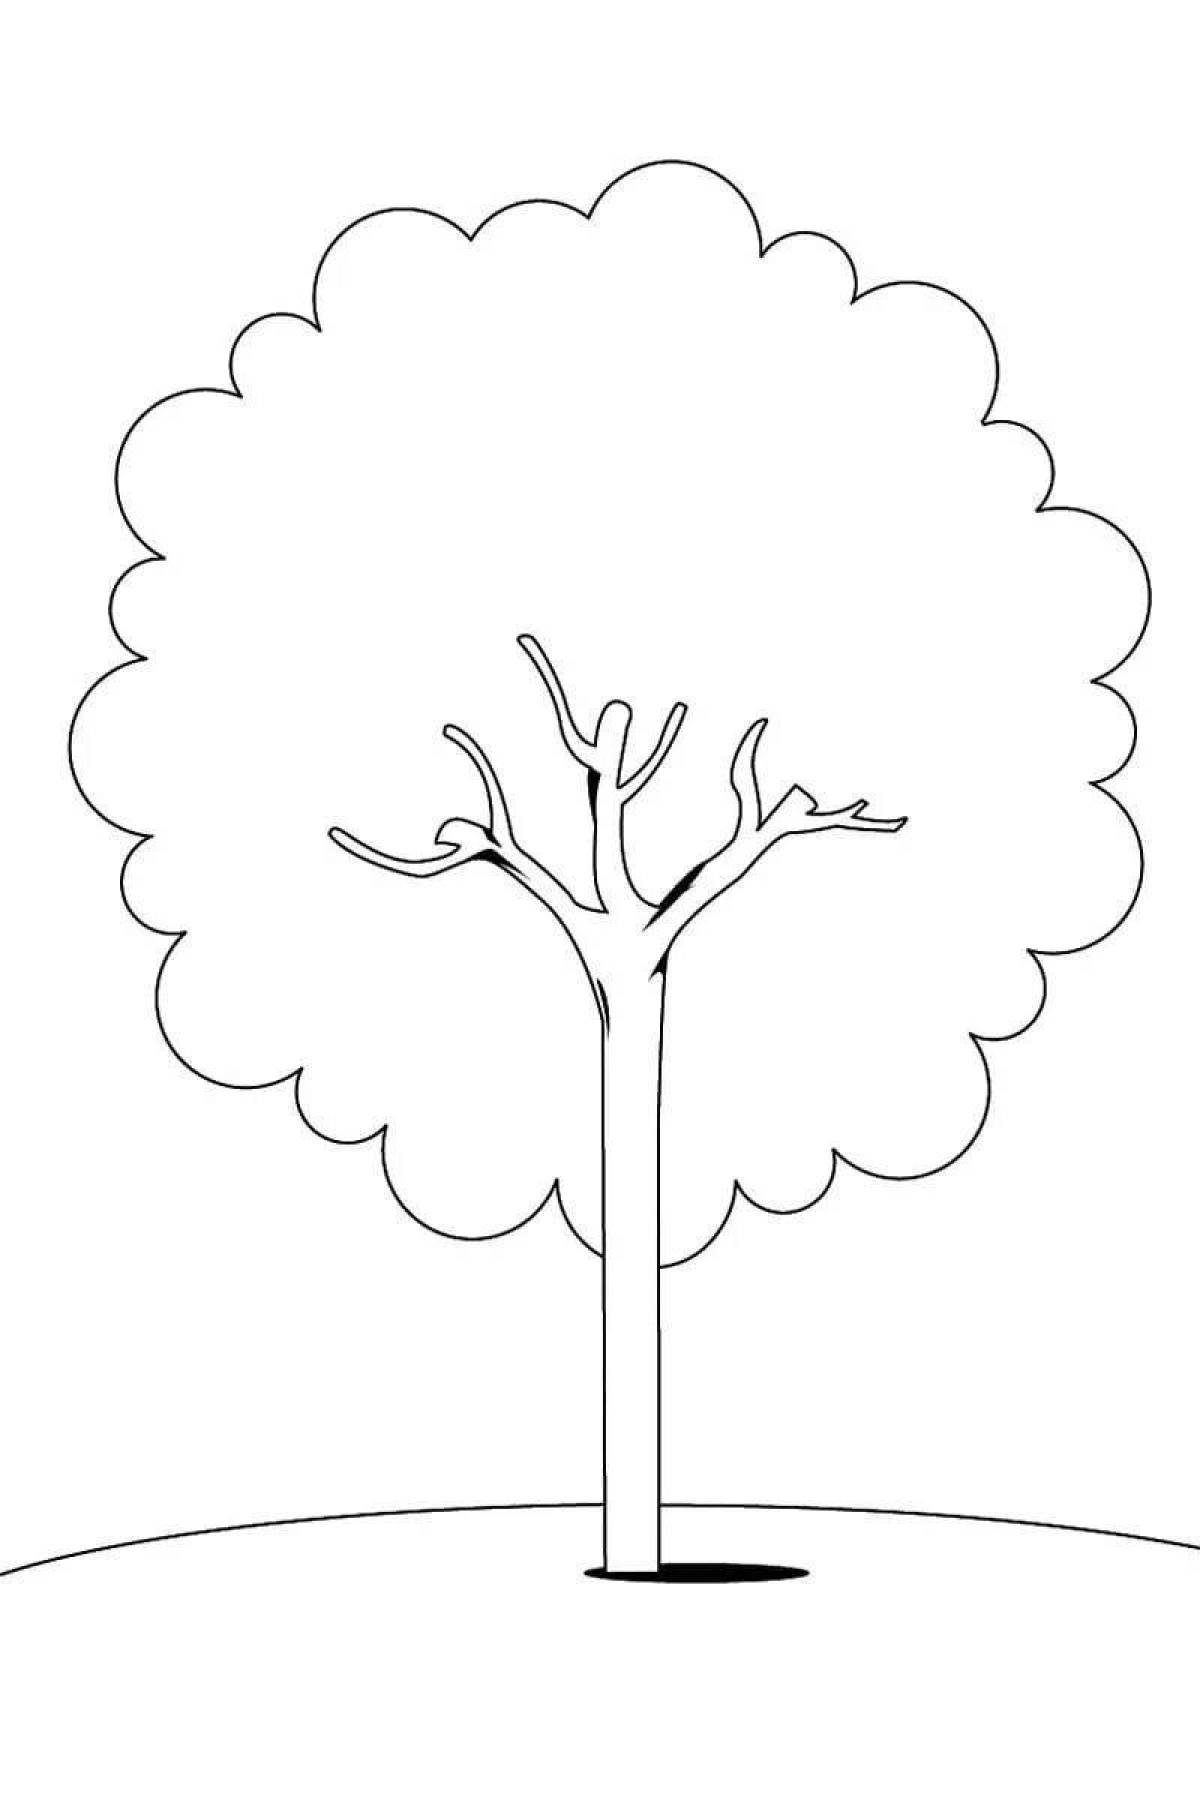 Дерево раскраски для детей. Скачать, распечатать онлайн бесплатно